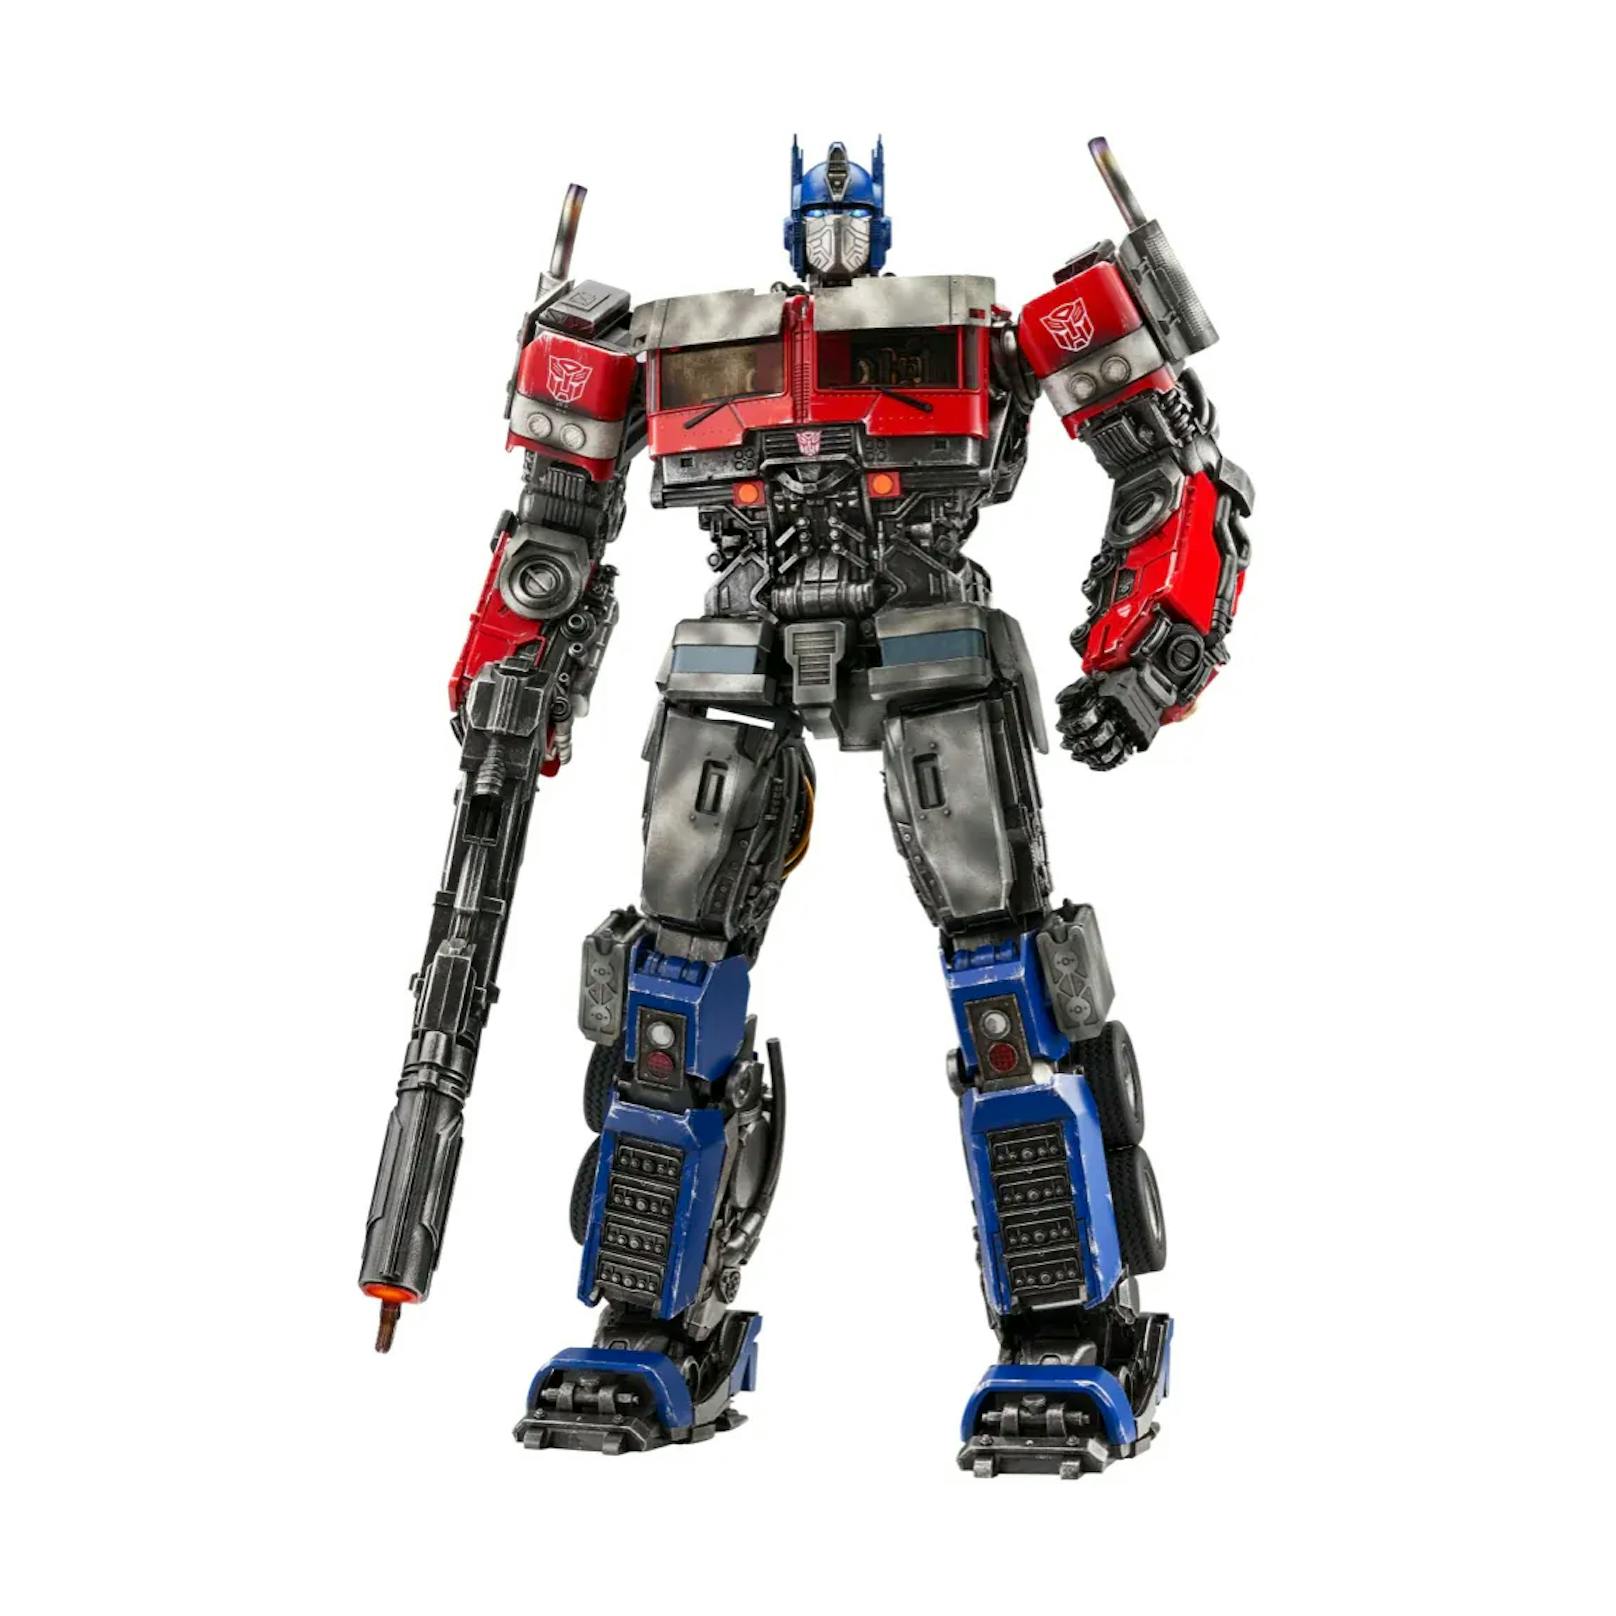 Optimus Prime ist 16 Zoll groß und wird mit zahlreichem Zubehör geliefert, wie dem beleuchtbaren Ionen-Blaster, der Energon-Axt und den Energon-Schwertern.